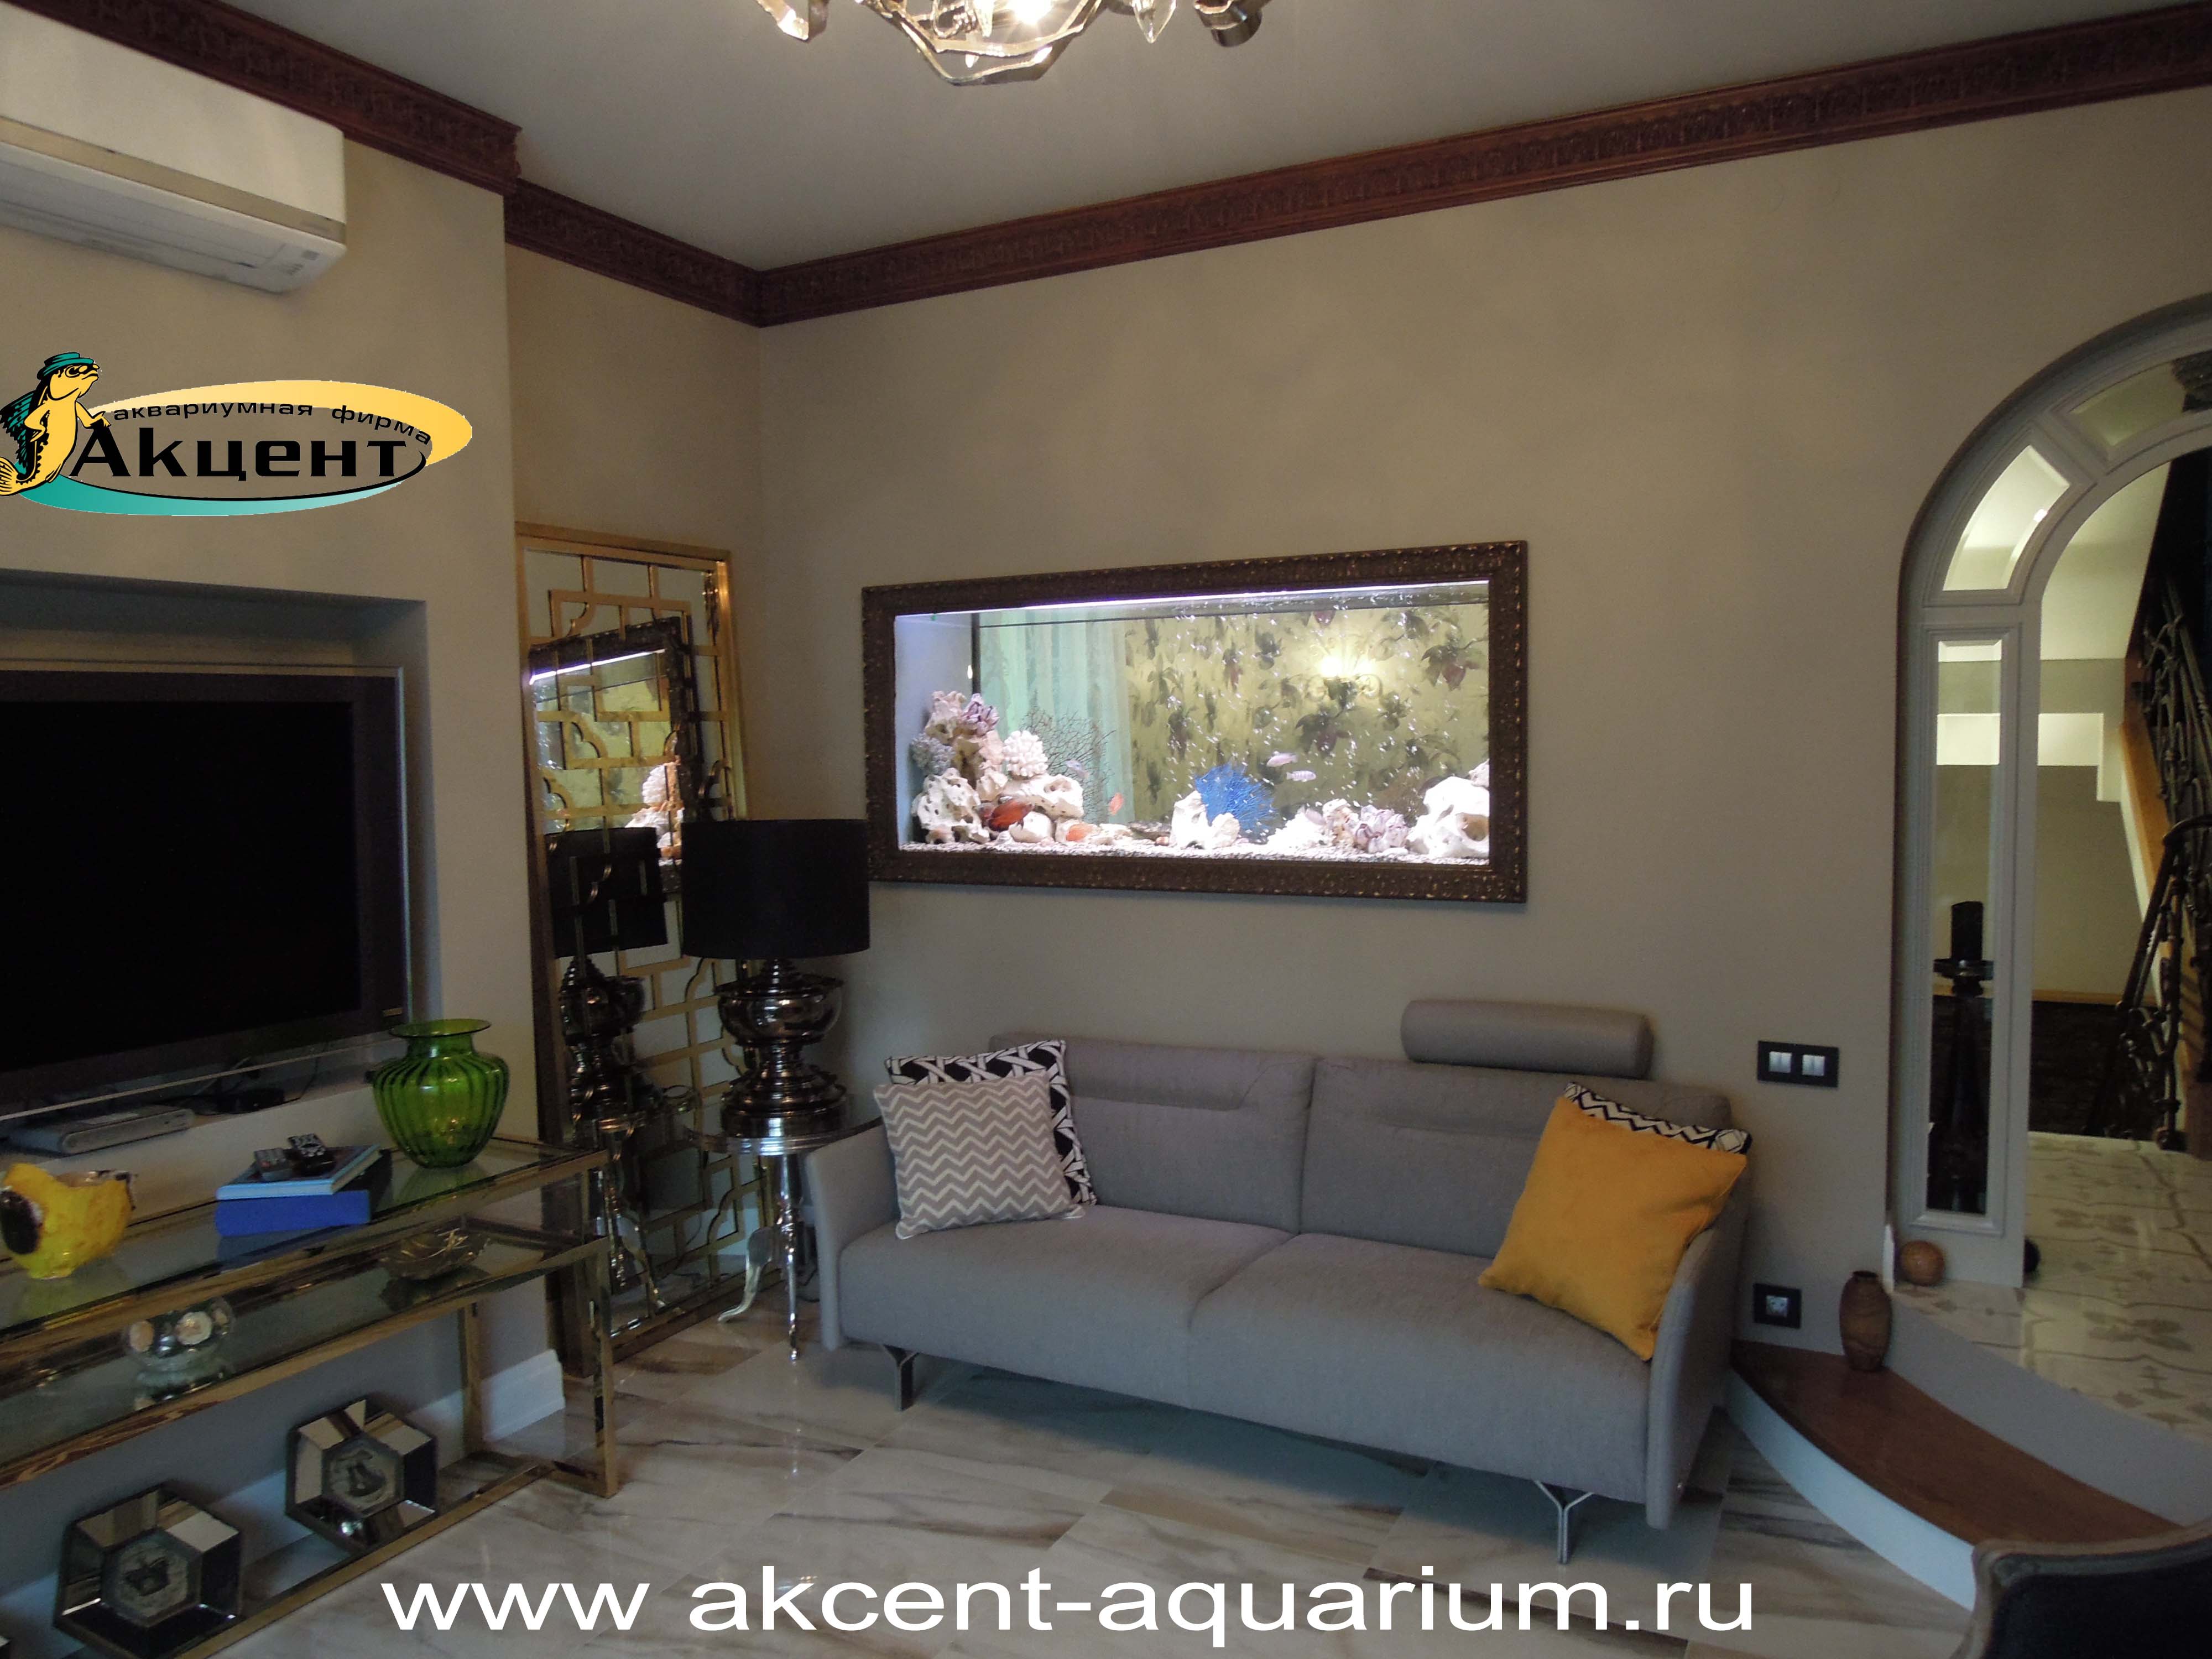 Акцент-аквариум,аквариум просмотровый 1000 литров встроенный в стену